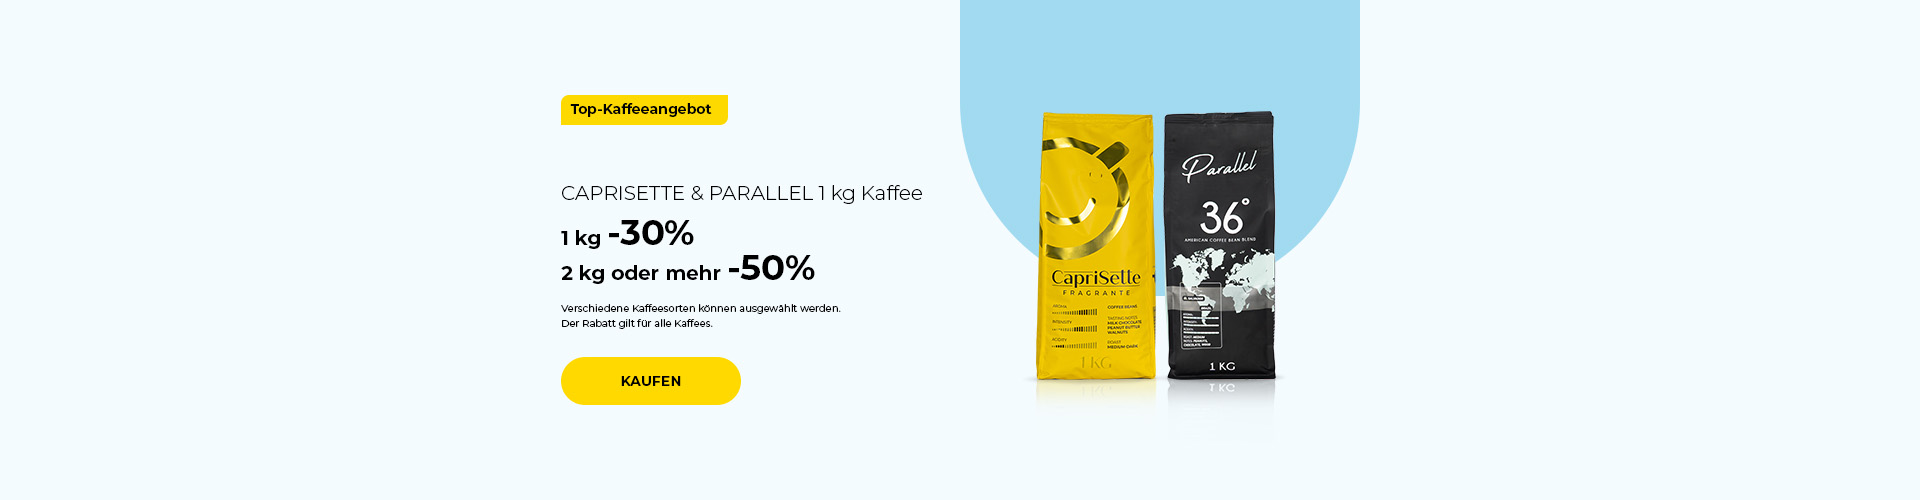 CAPRISETTE & PARALLEL 1 kg Kaffee 1 kg -30% 2 kg oder mehr -50%